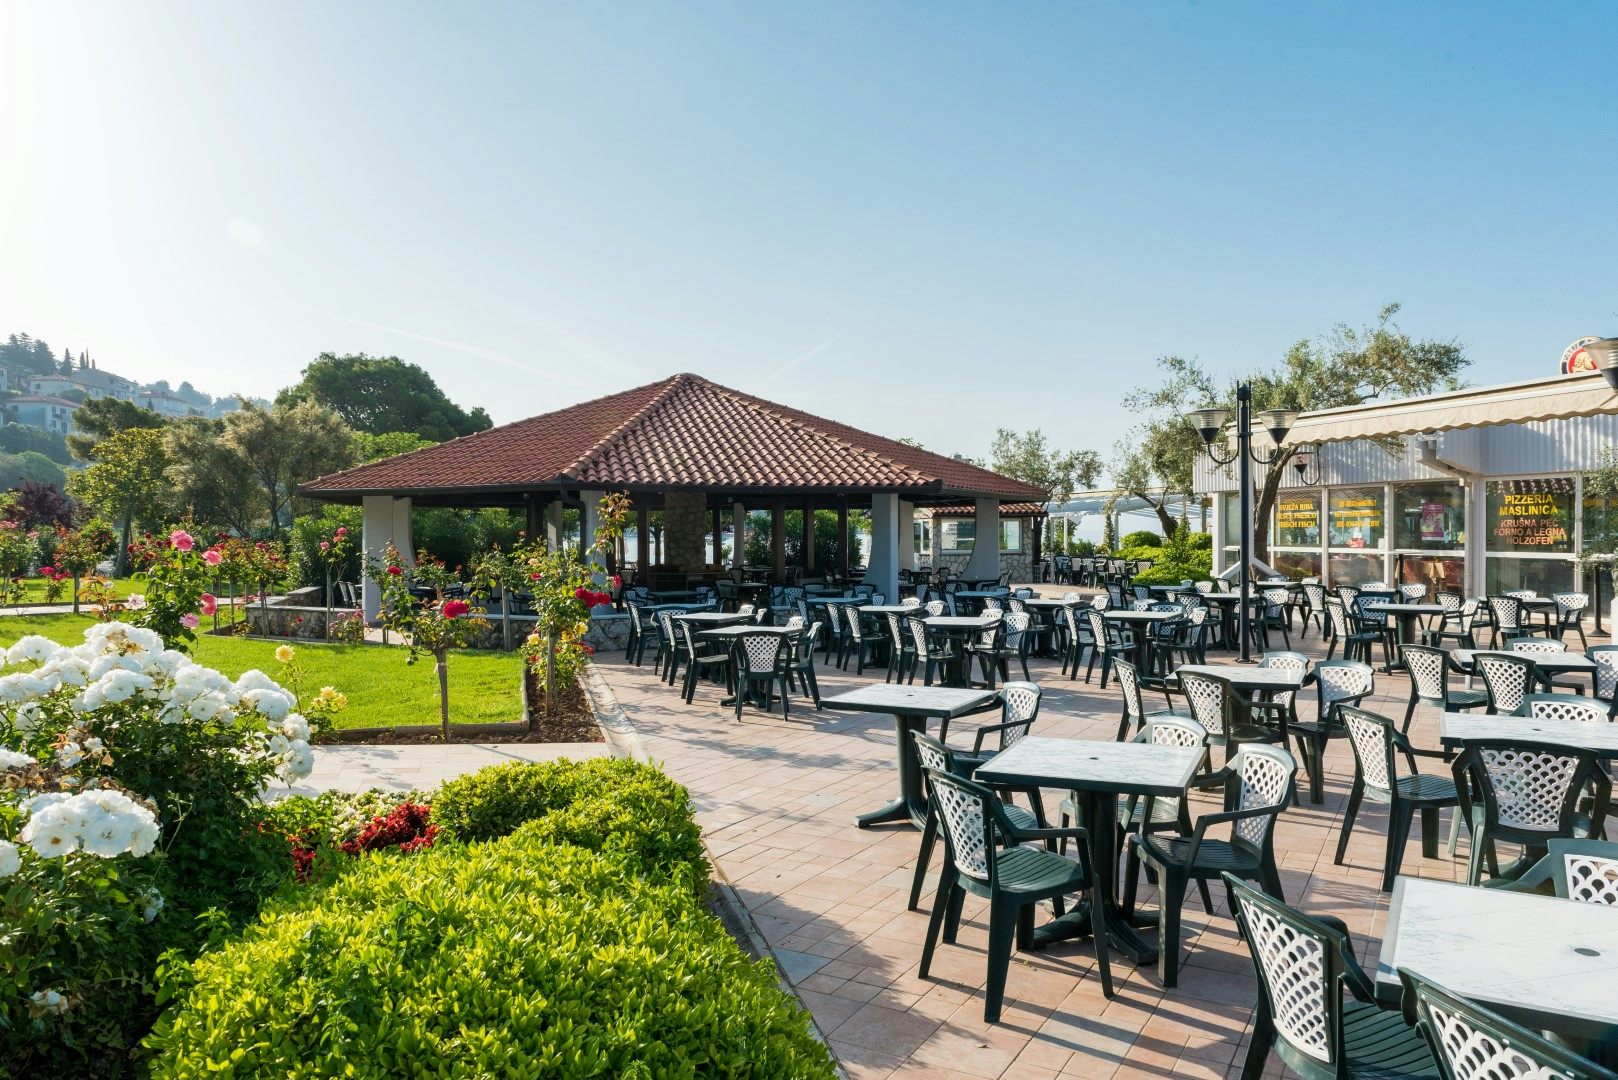 <ul><li>Hotelski restorani (1850 sjedećih mjesta) </li><li>Grill restoran Oliva (440 sjedećih mjesta) </li><li>Konferencijski bar</li><li>Hedera Club bar (Hedera Hotel 4*) </li><li>Ancora bar (uz plažu)</li></ul>